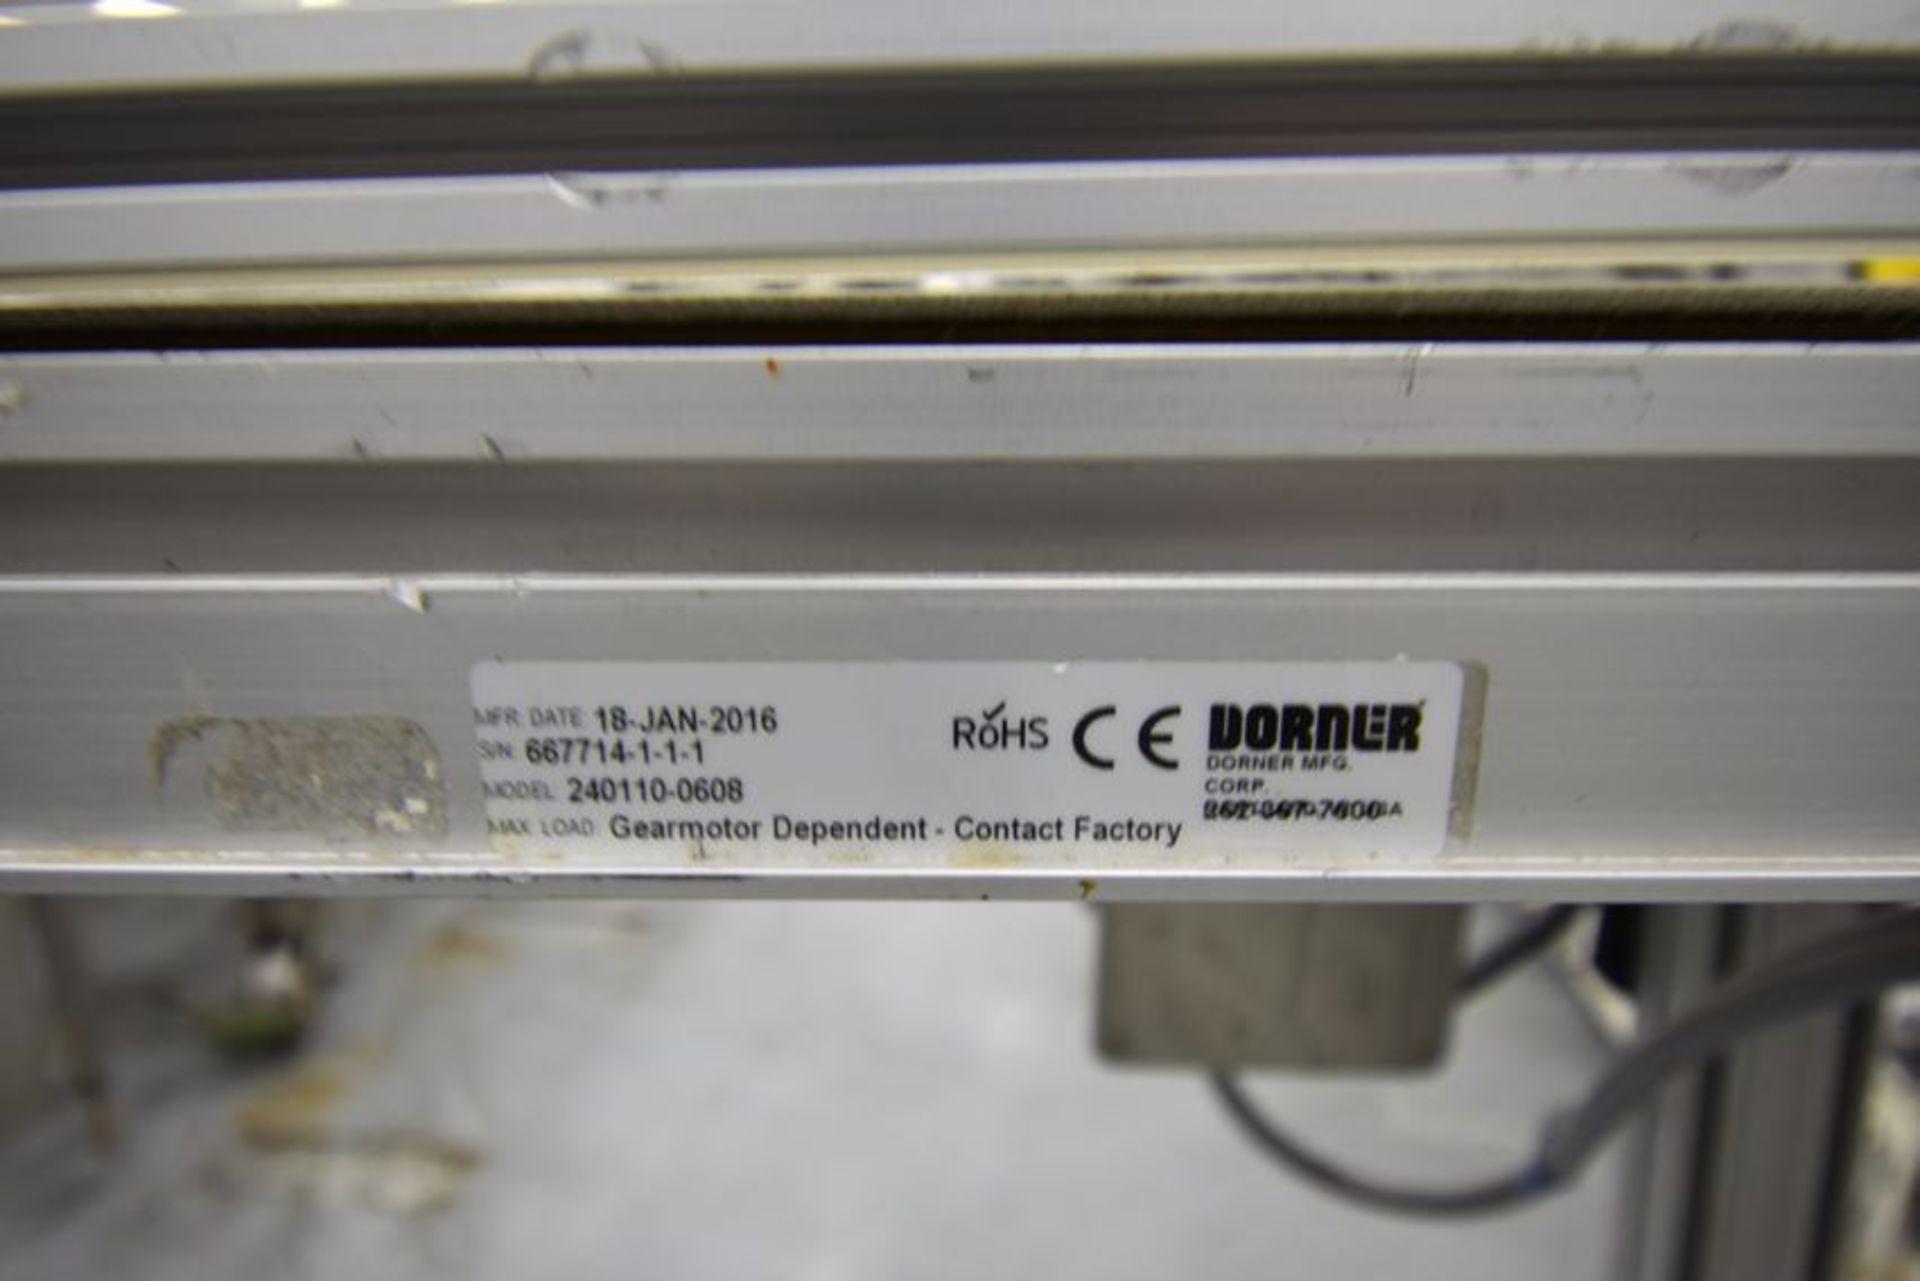 Dorner Conveyor with plastic belt | Dorner Conveyor with plastic belt. 10" wide x 6' long. Removal - Image 6 of 6